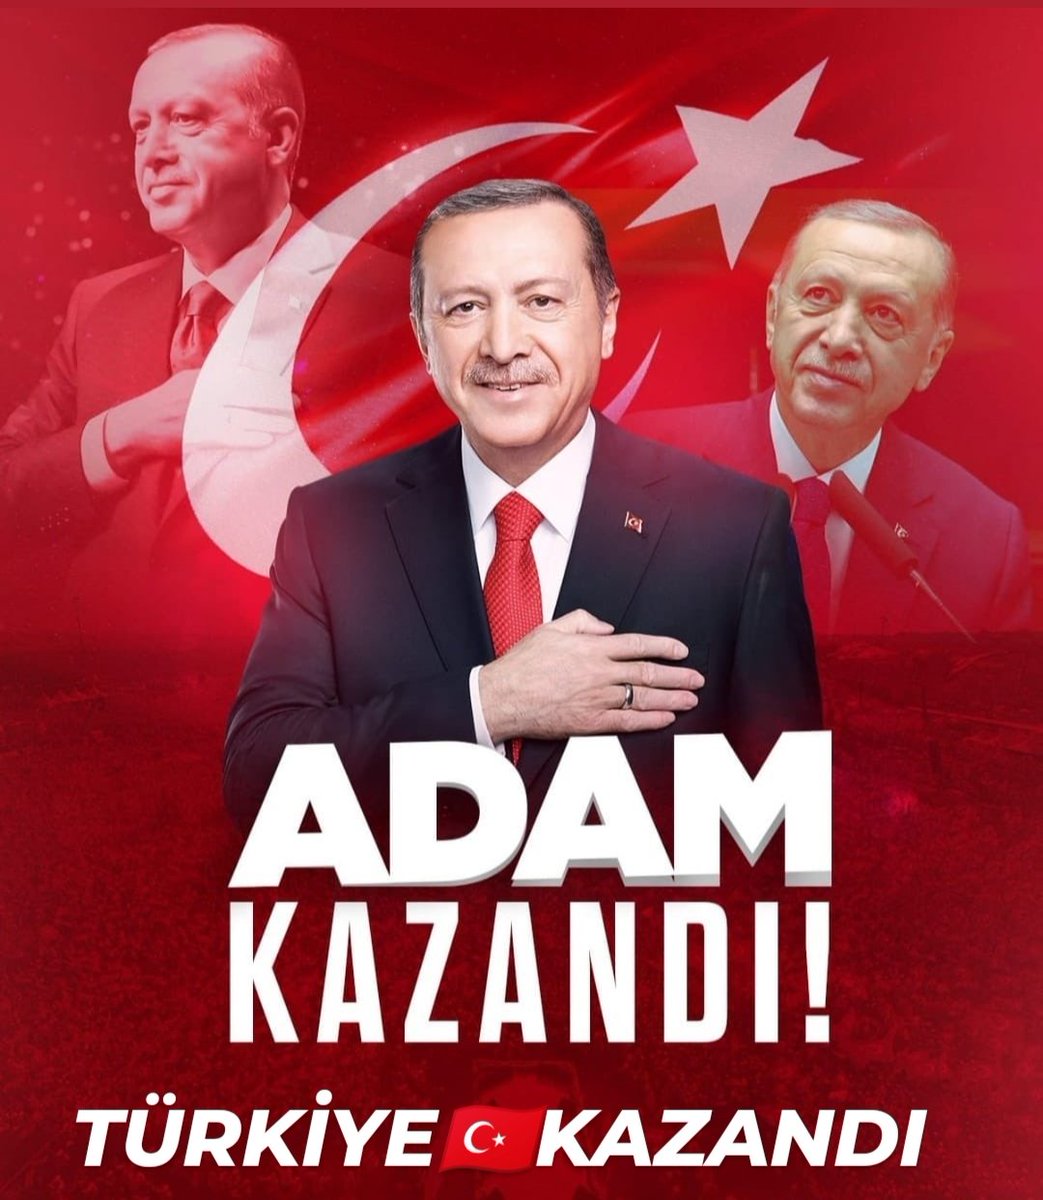 Cumhurbaşkanı Recep Tayyip Erdoğan 70 yaşına gelmesine rağmen, Ne bir kar tatili, Nede yaz tatili yapmamış, Devletine ve Milletine daha iyi Hizmet etmek için Gece gündüz Azimle çalışmıştır. Cumhurbaşkanı olmak herkesin yapacağı bir iş değildir. ADAM YİNE KAZANDI TÜRKİYE🇹🇷KAZANDI